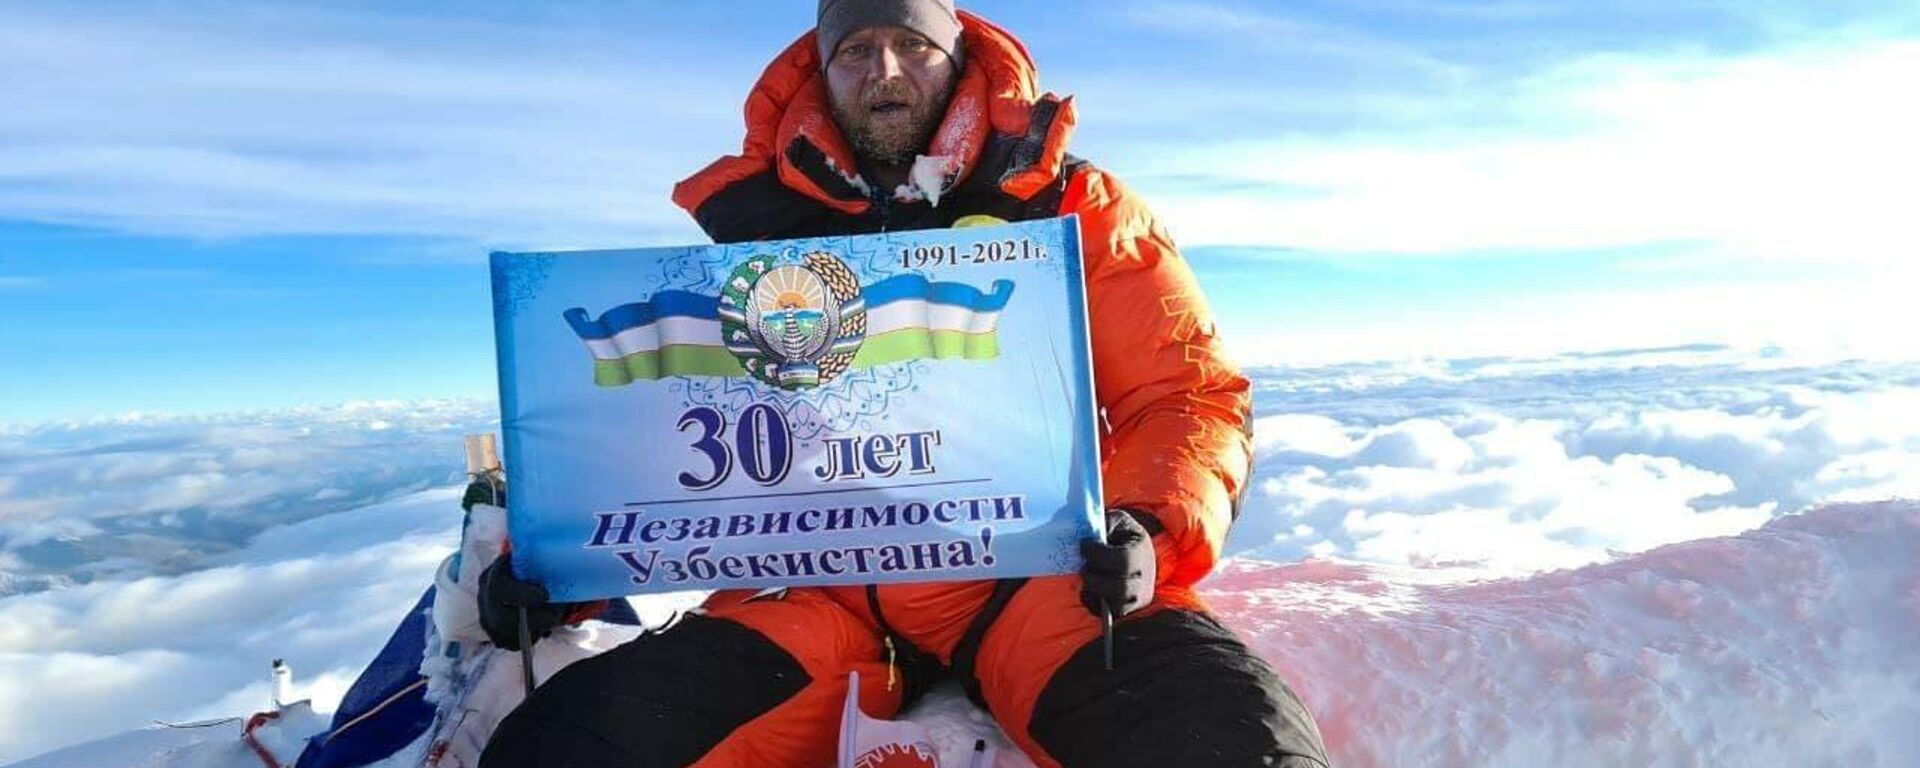 Узбекистанец  Сергей Денисенко исполнил мечту и поднялся на Эверест - Sputnik Узбекистан, 1920, 02.06.2021